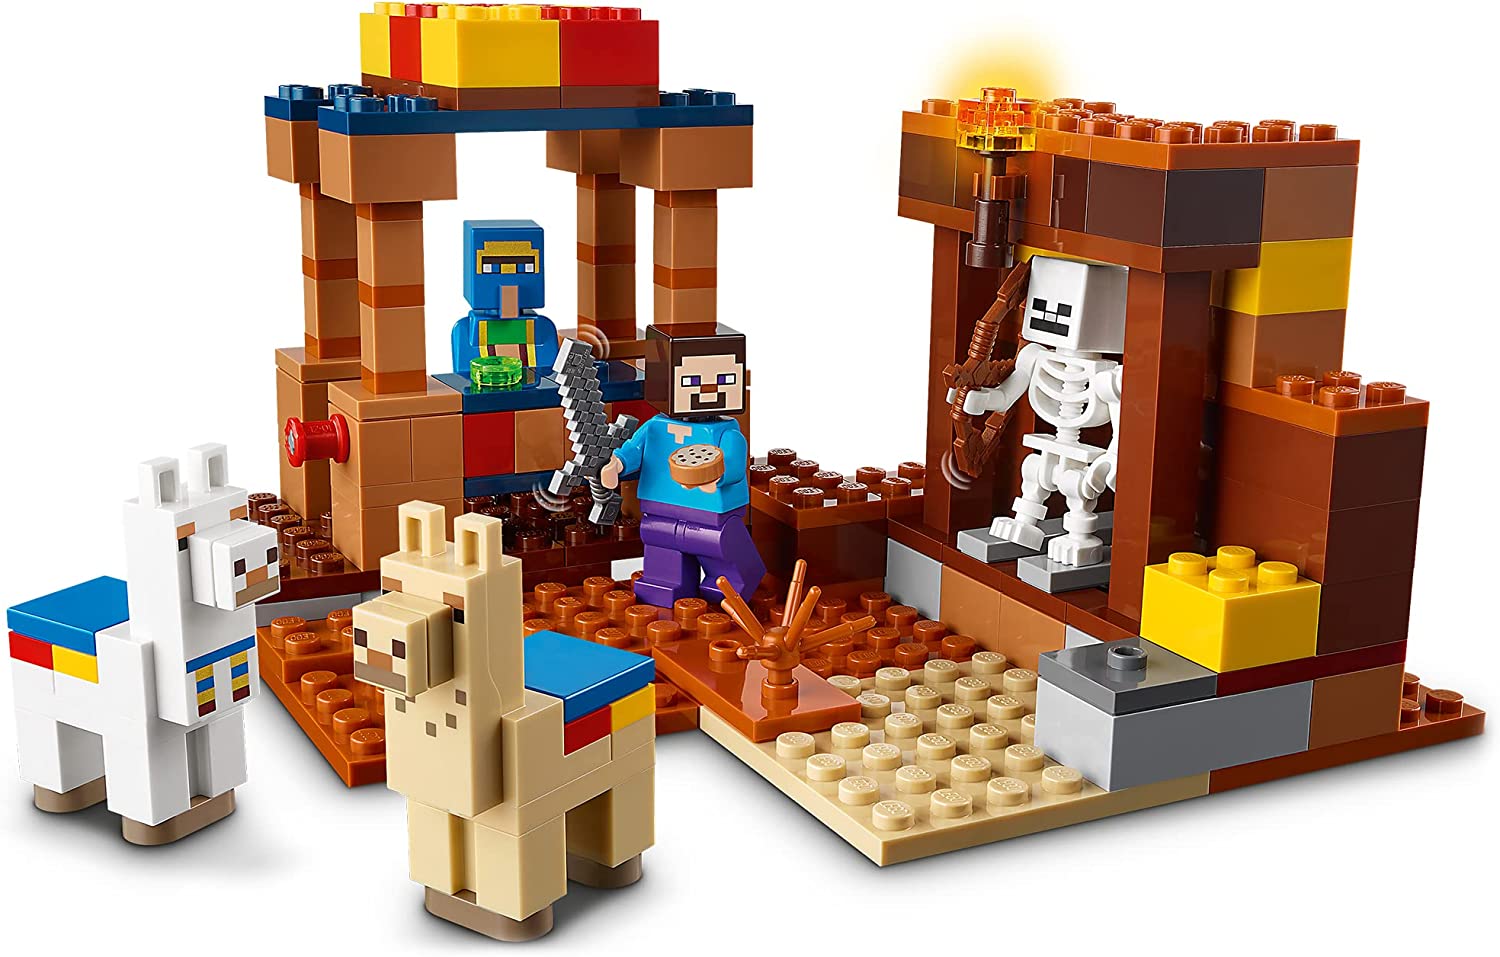 LEGO 21167 Minecraft Handelsposten Byggsats Barnleksaker, Byggklossar